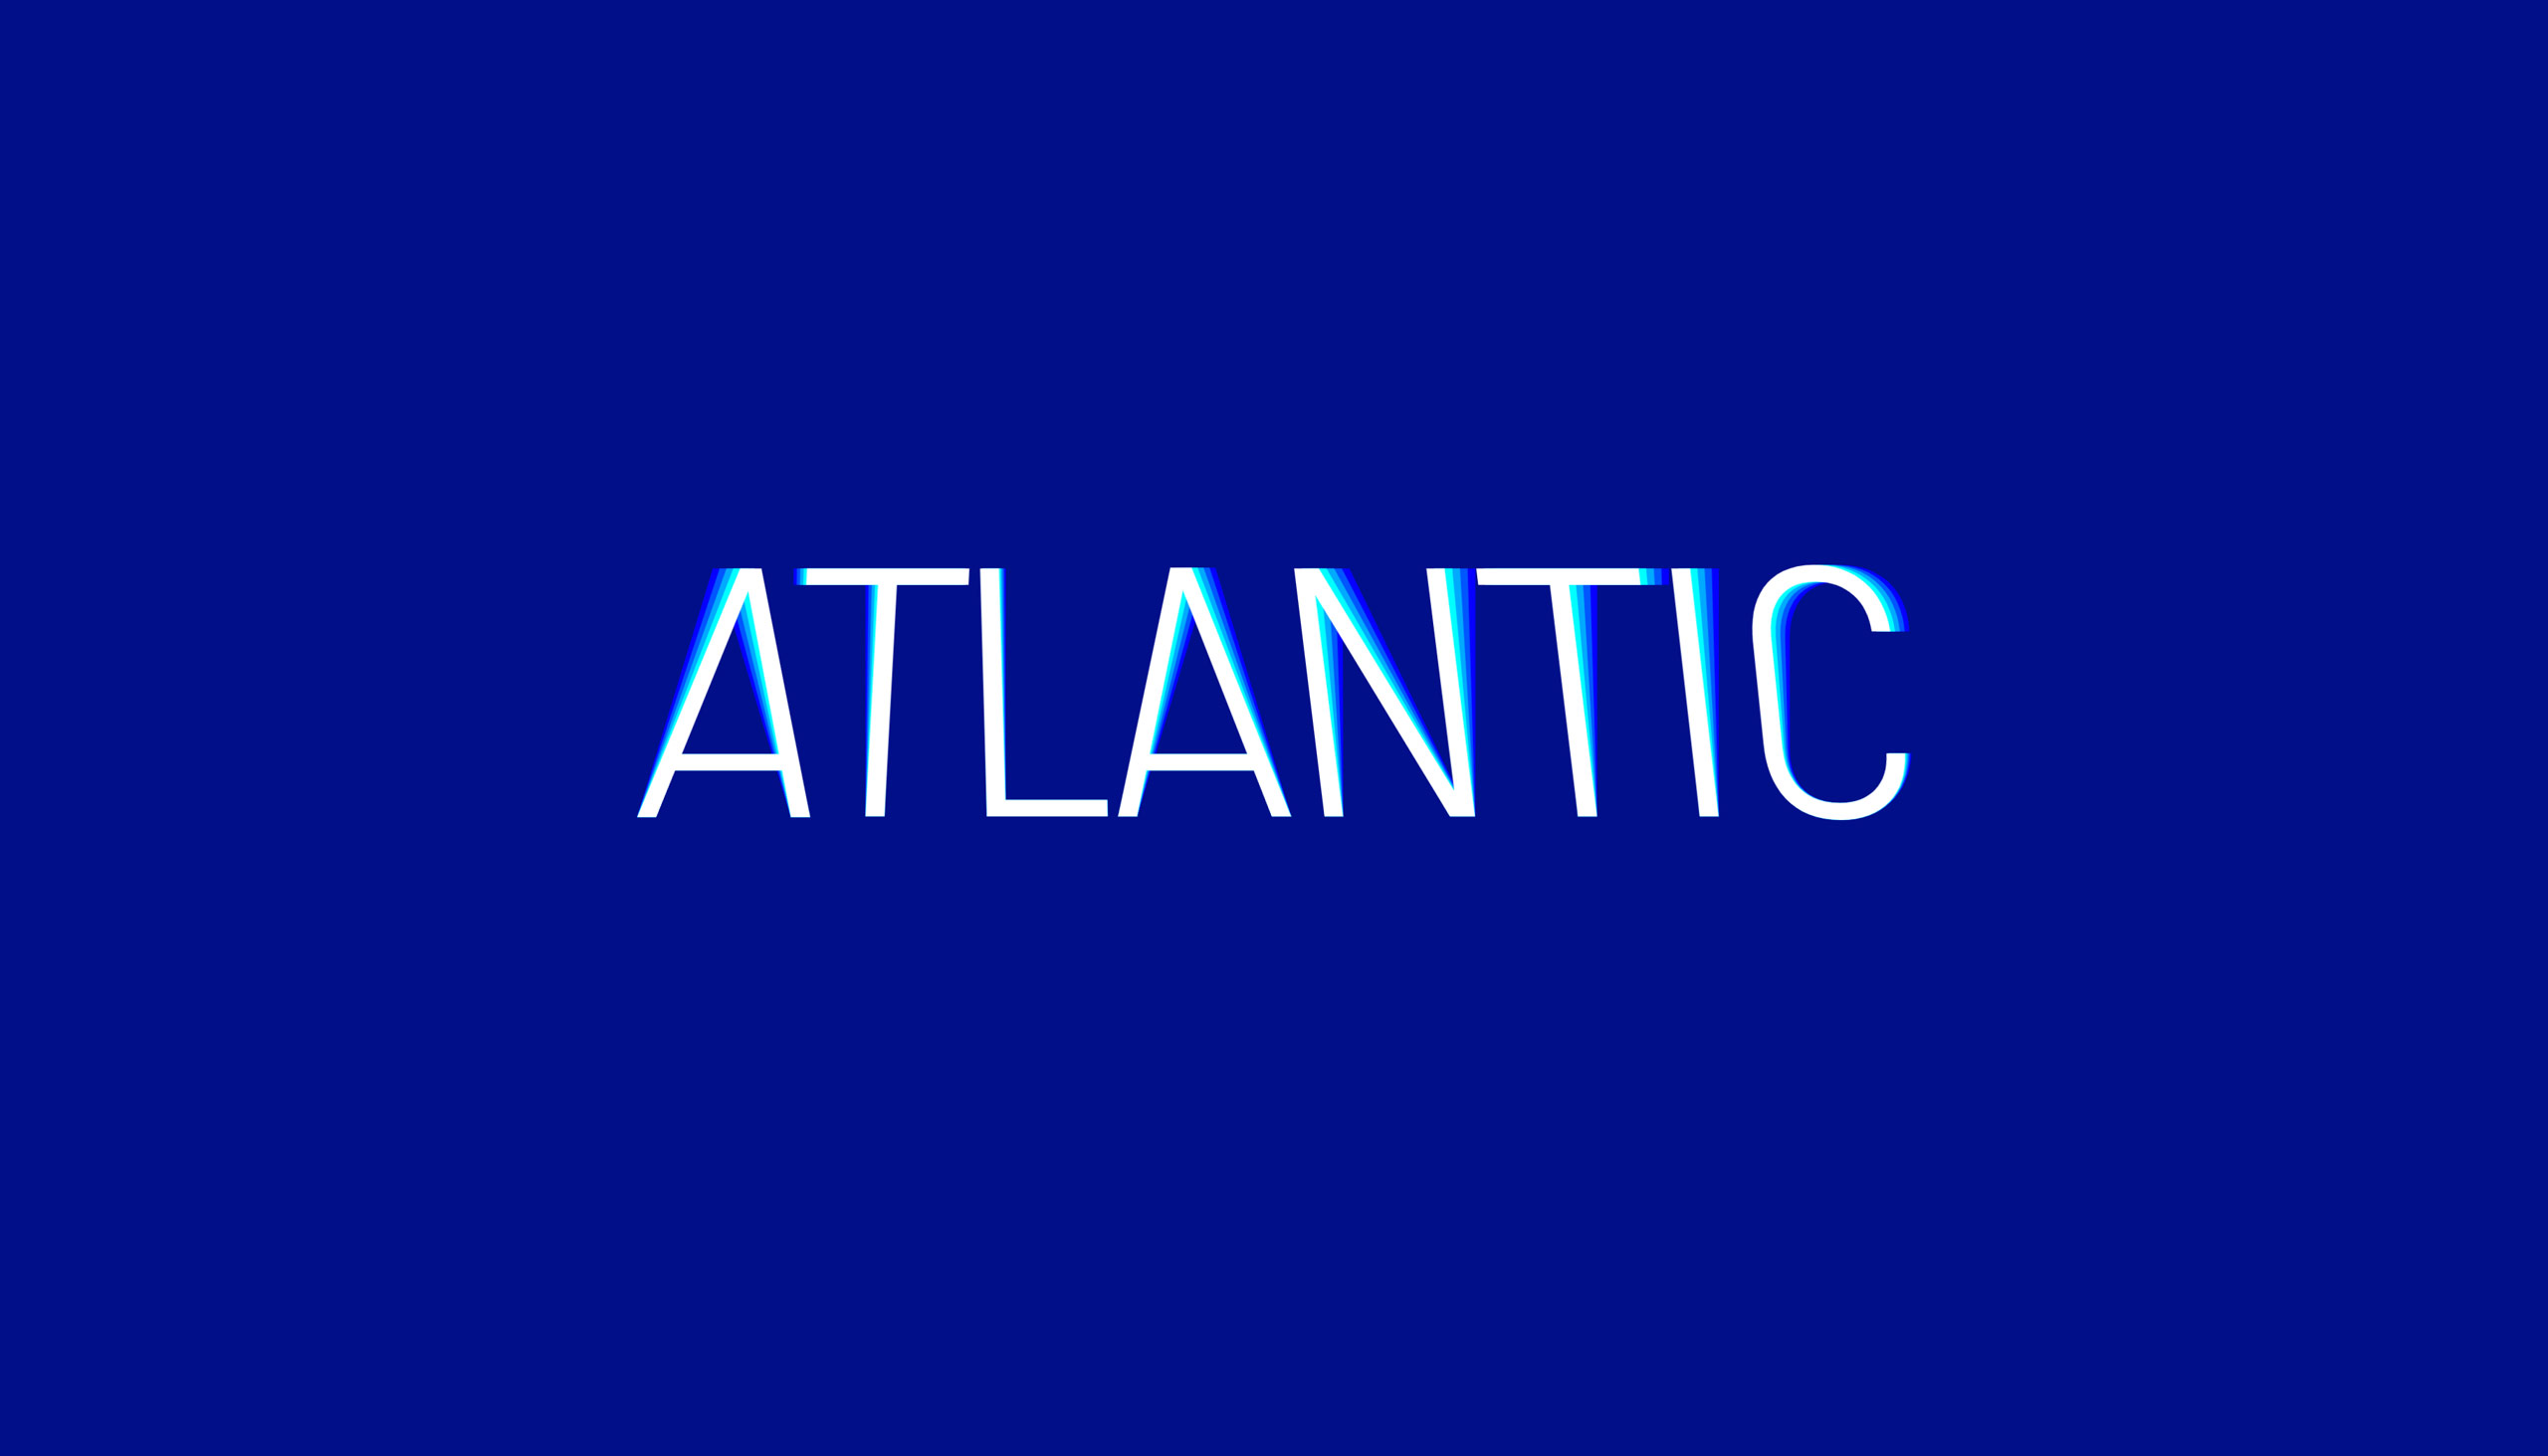 Atlantic – Espace artistique